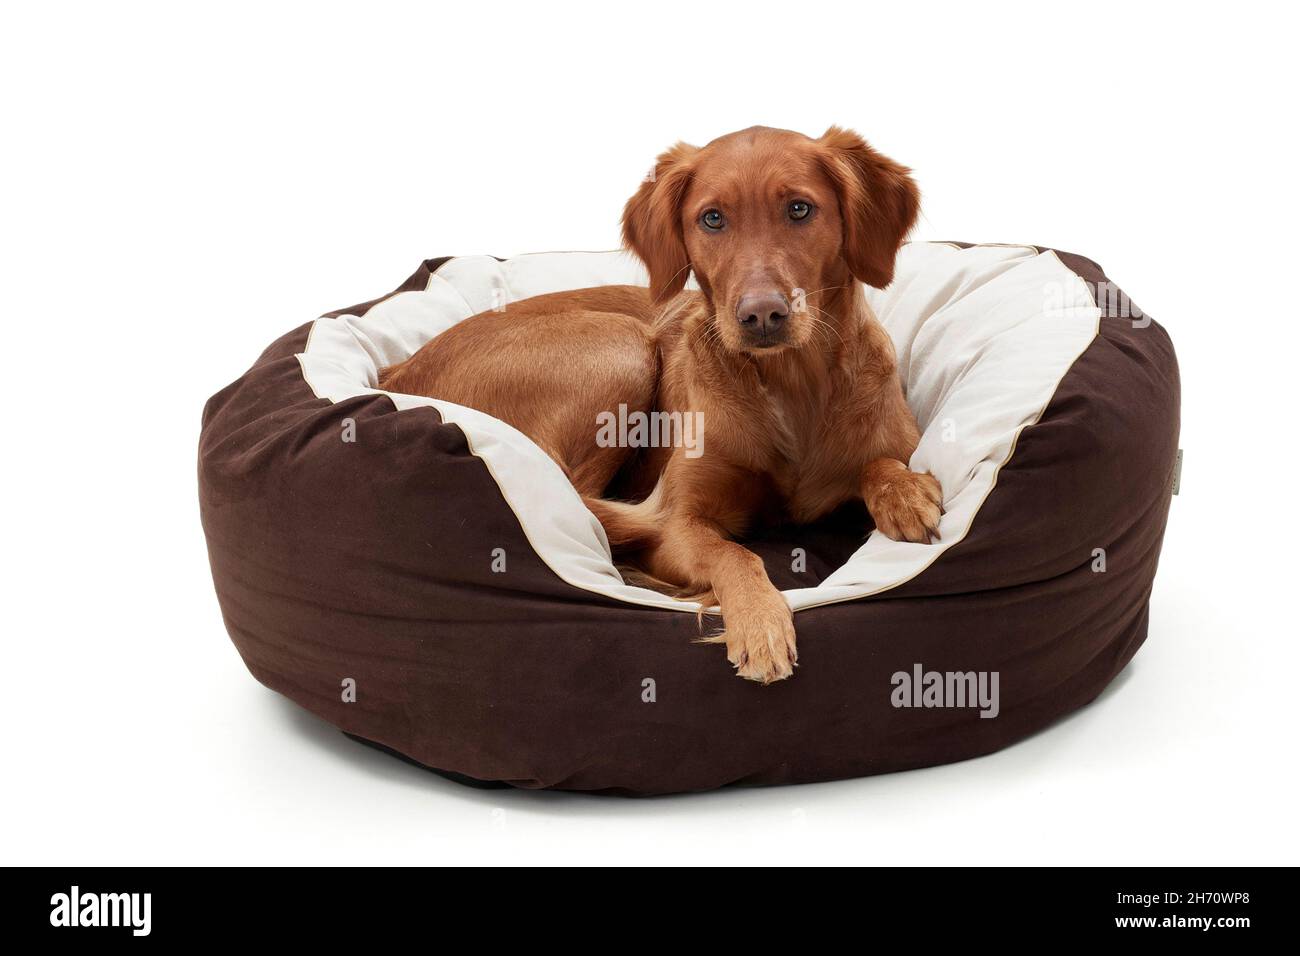 Golden Retriever.Un chien adulte se trouve dans un lit pour chien.Image studio sur fond blanc.Allemagne... Banque D'Images